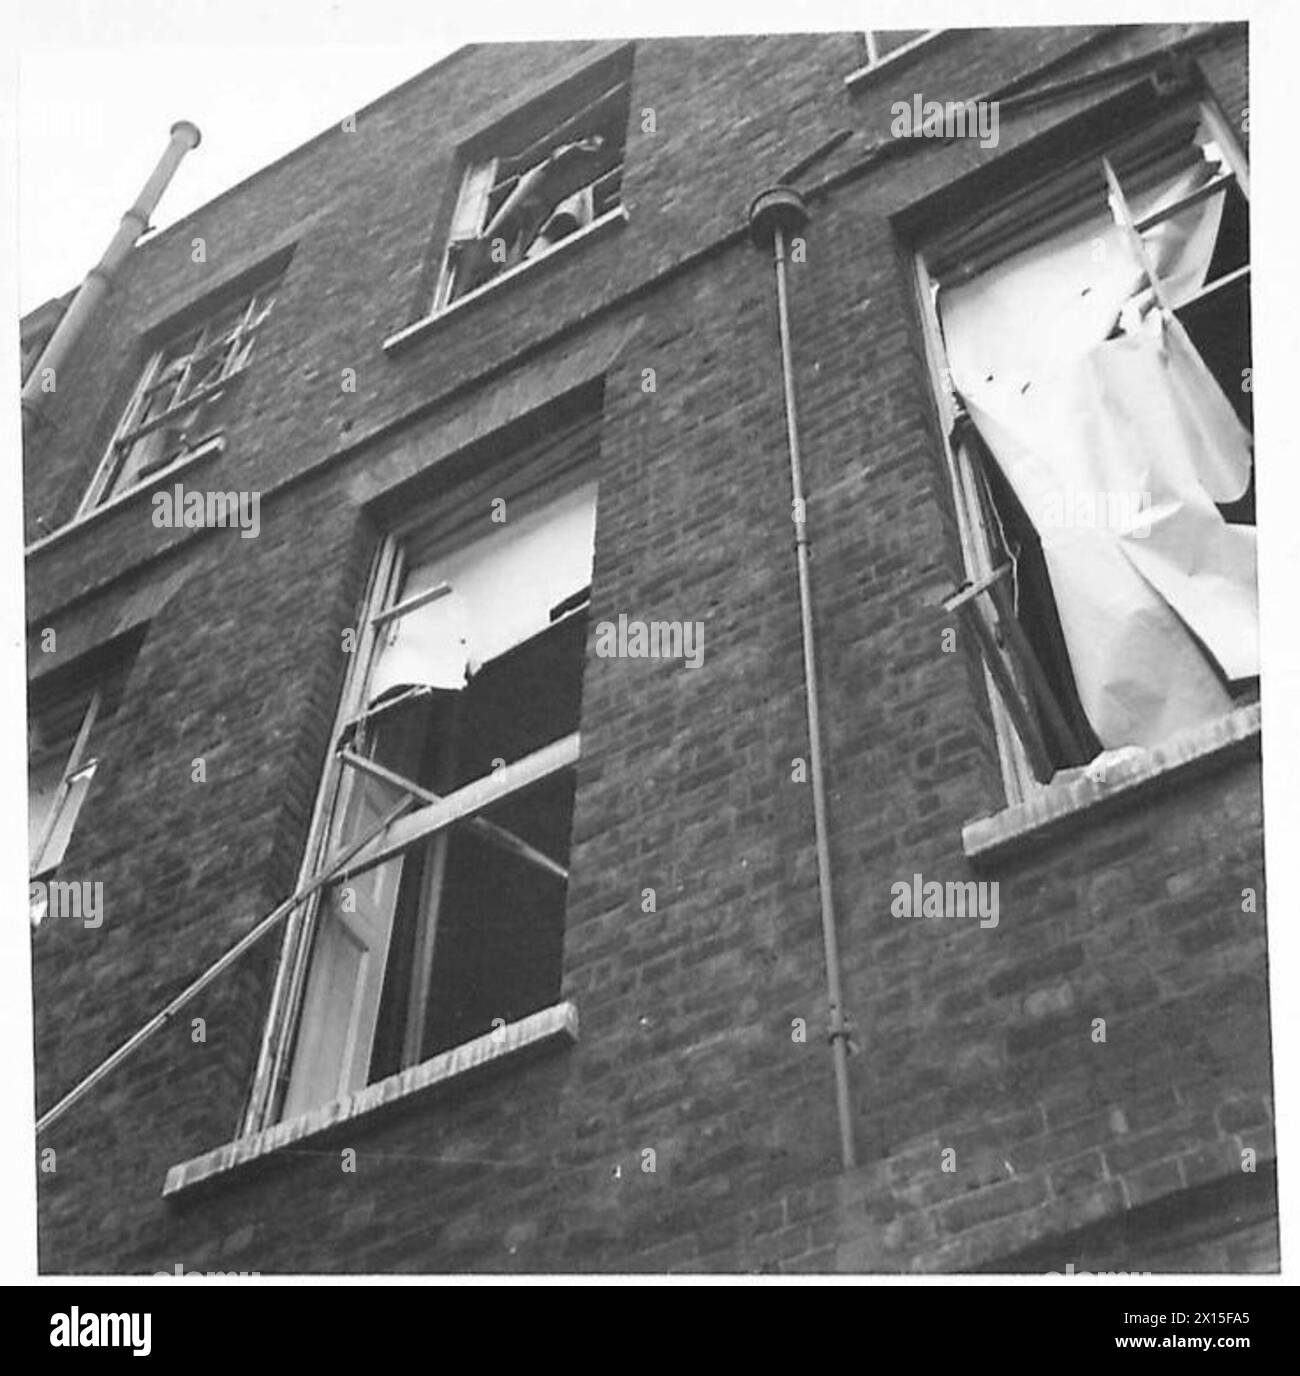 NO.10 DOWNING STREET WURDE WÄHREND DES RAID BESCHÄDIGT - die kaputten Fenster der Nummern 10 und 11 [Rückseite der Häuser] British Army Stockfoto